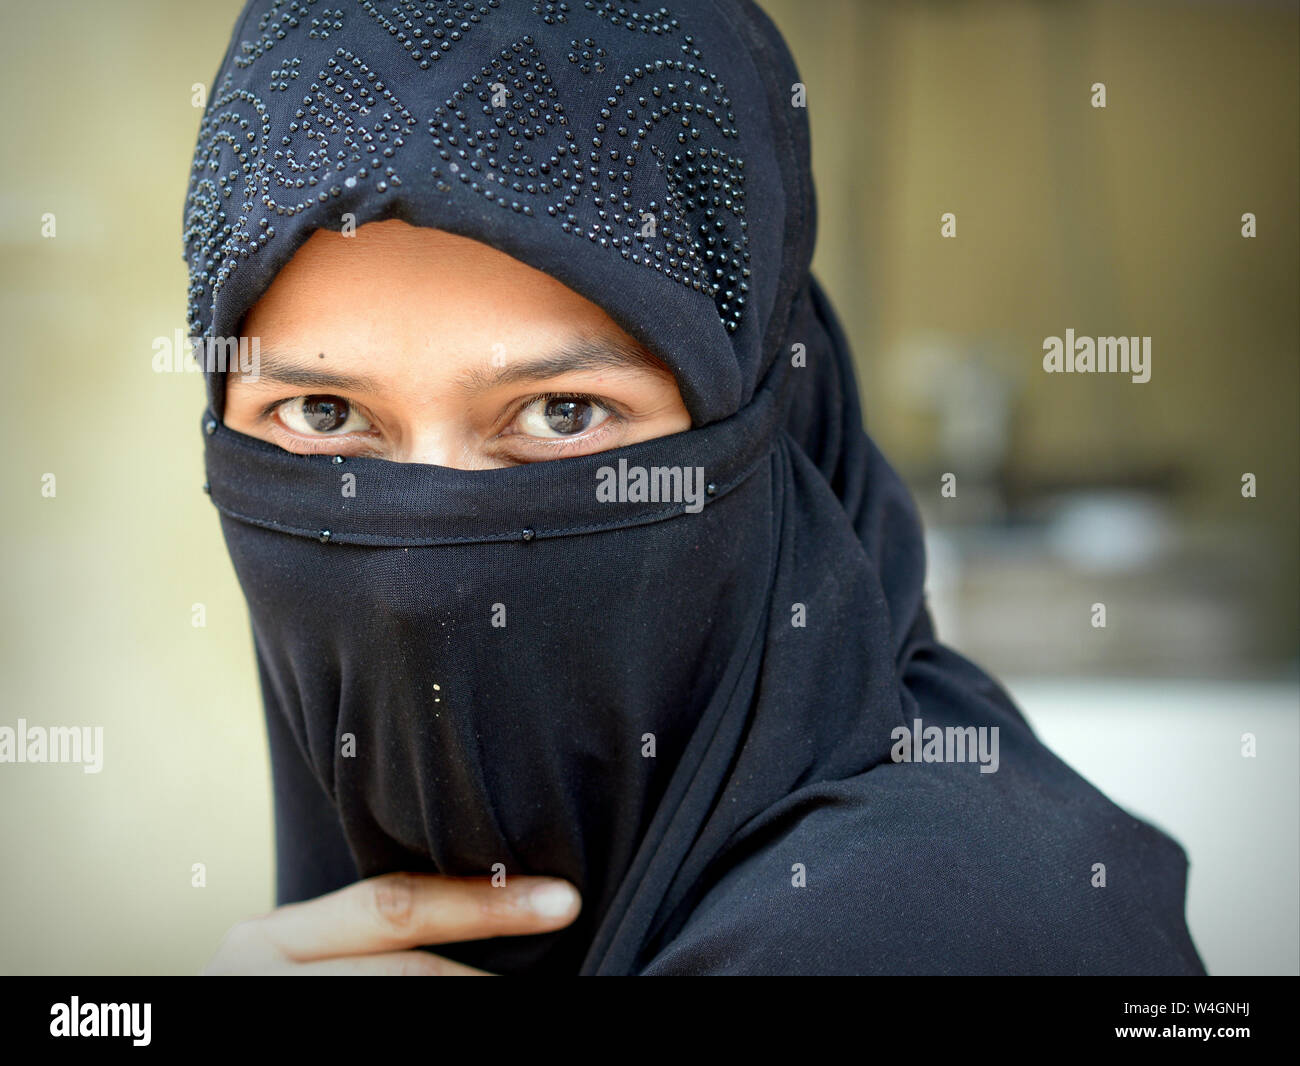 Junge indische Muslima mit schönen Augen deckt ihr Haar und der untere Teil des Gesichts mit einem schwarzen islamischen Schleier (Niqab). Stockfoto